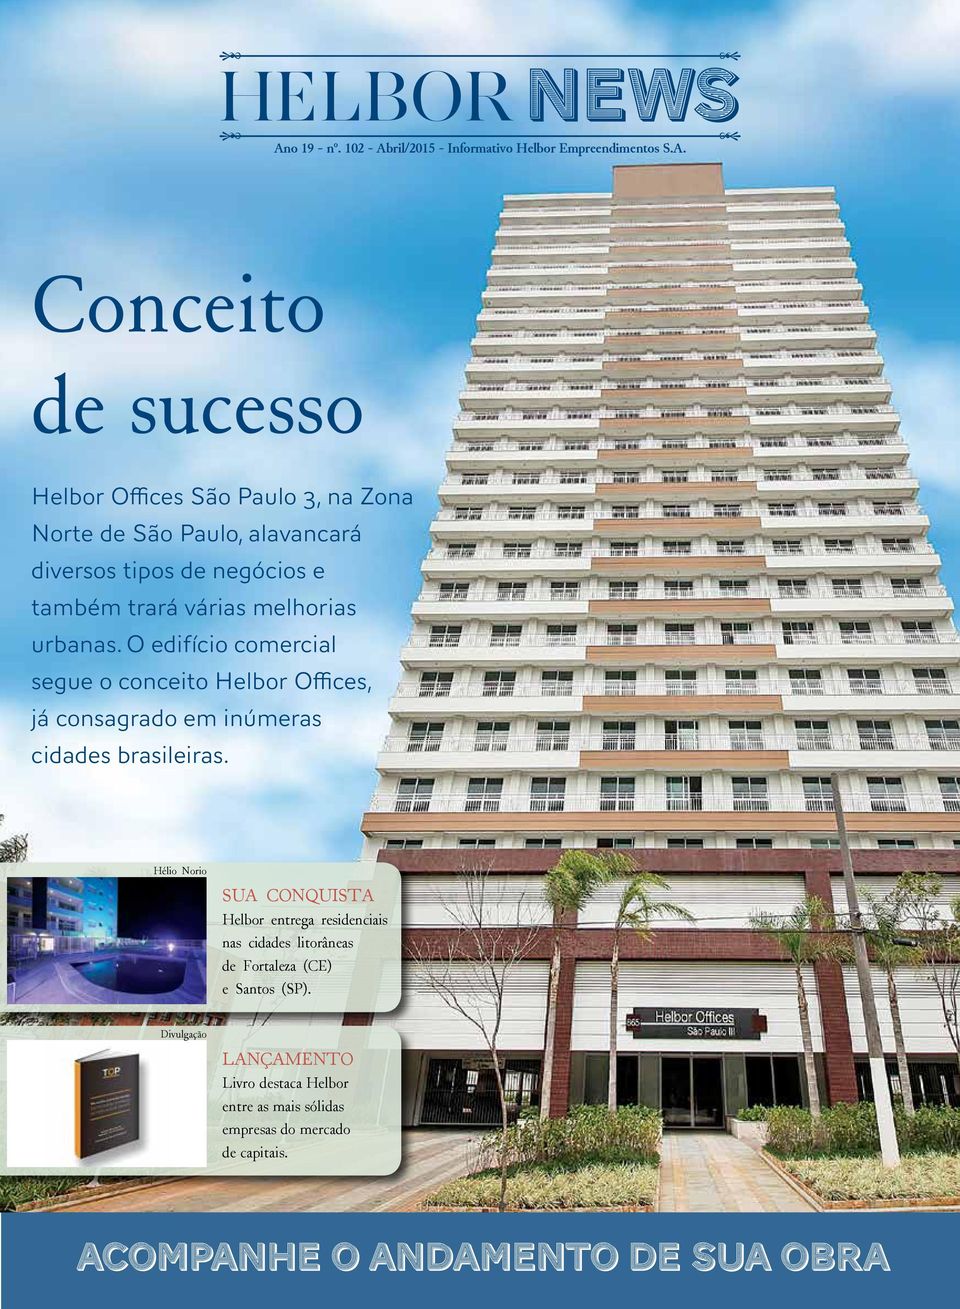 O edifício comercial segue o conceito Helbor Offices, já consagrado em inúmeras cidades brasileiras.